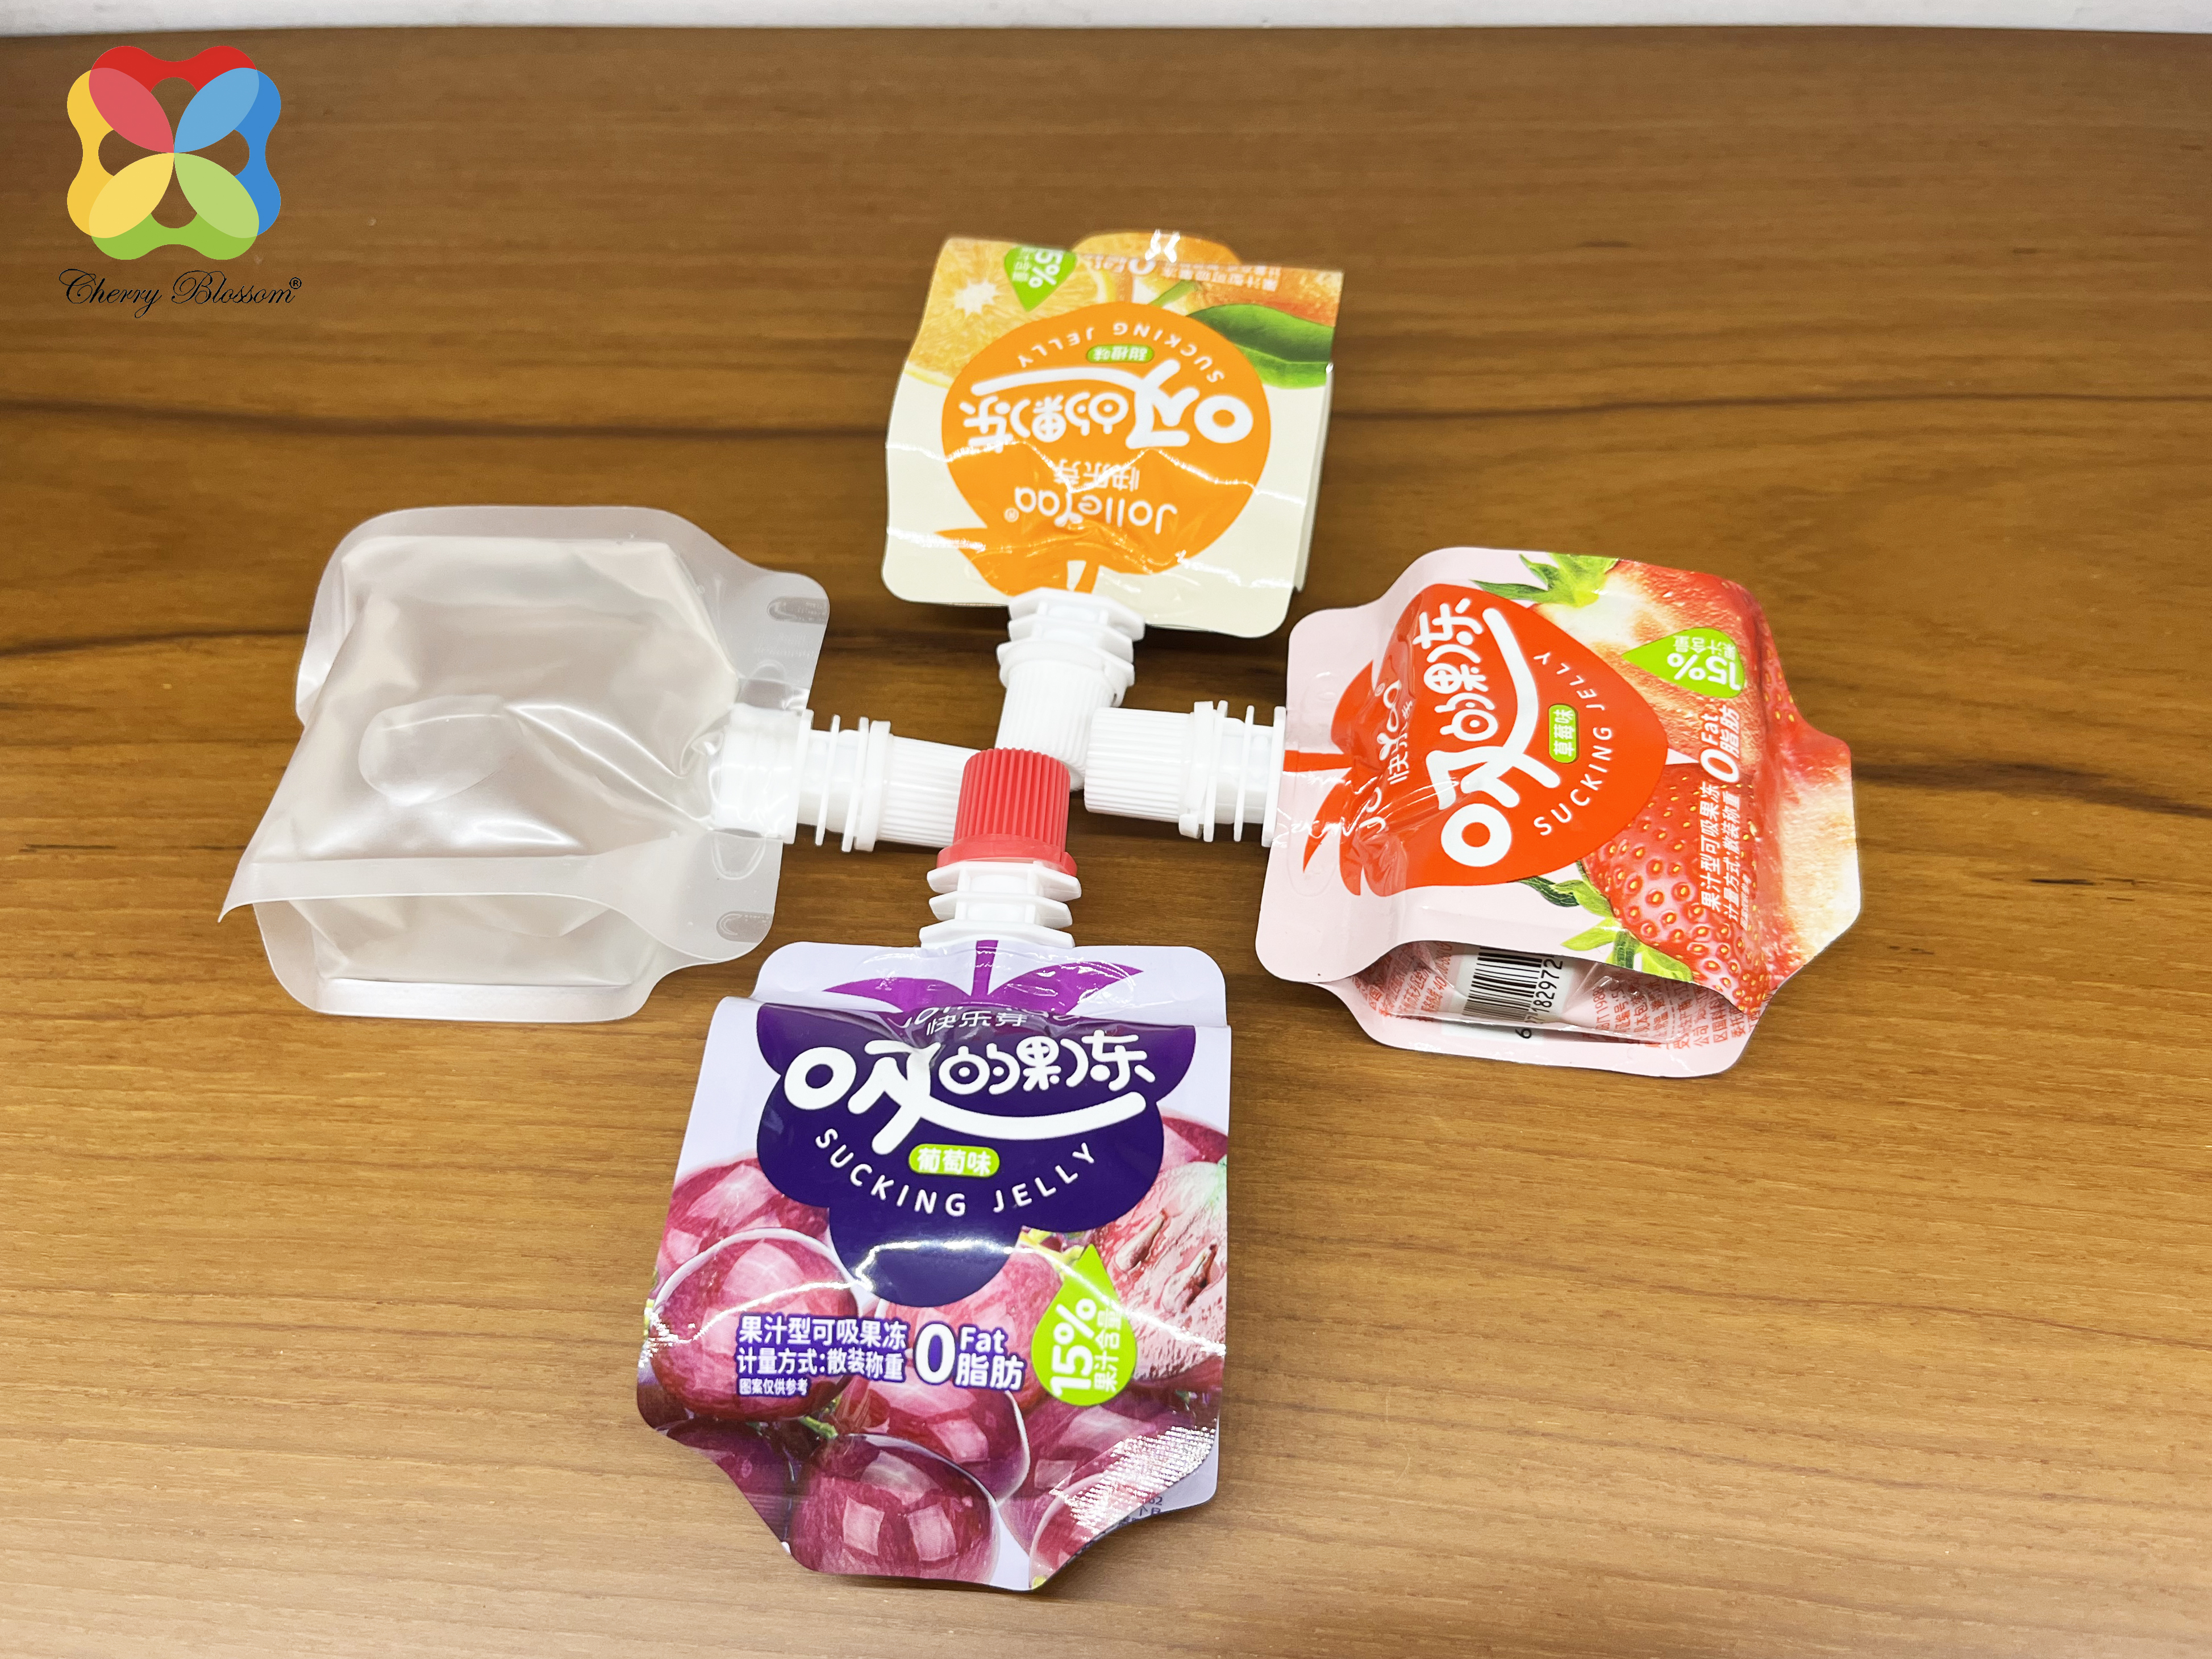 sacchetto di beccuccio imballaggio di gelatina imballaggio alimentare sacchetti di beccuccio stampa personalizzata Imballaggio di sacchetti liquidi